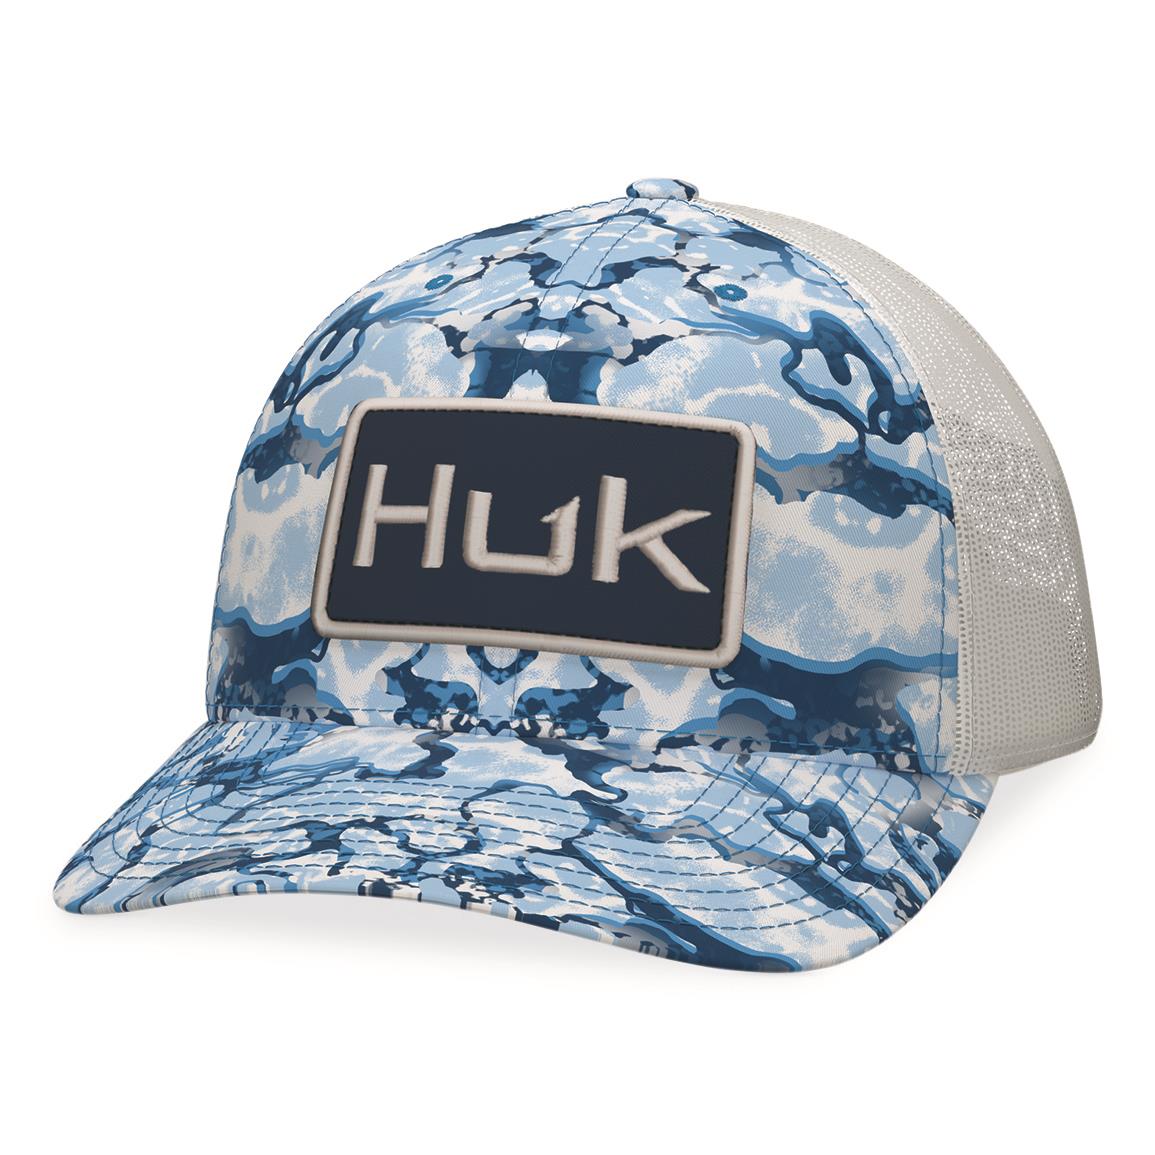 Huk Inside Reef Camo Trucker Hat, Azufre Blue